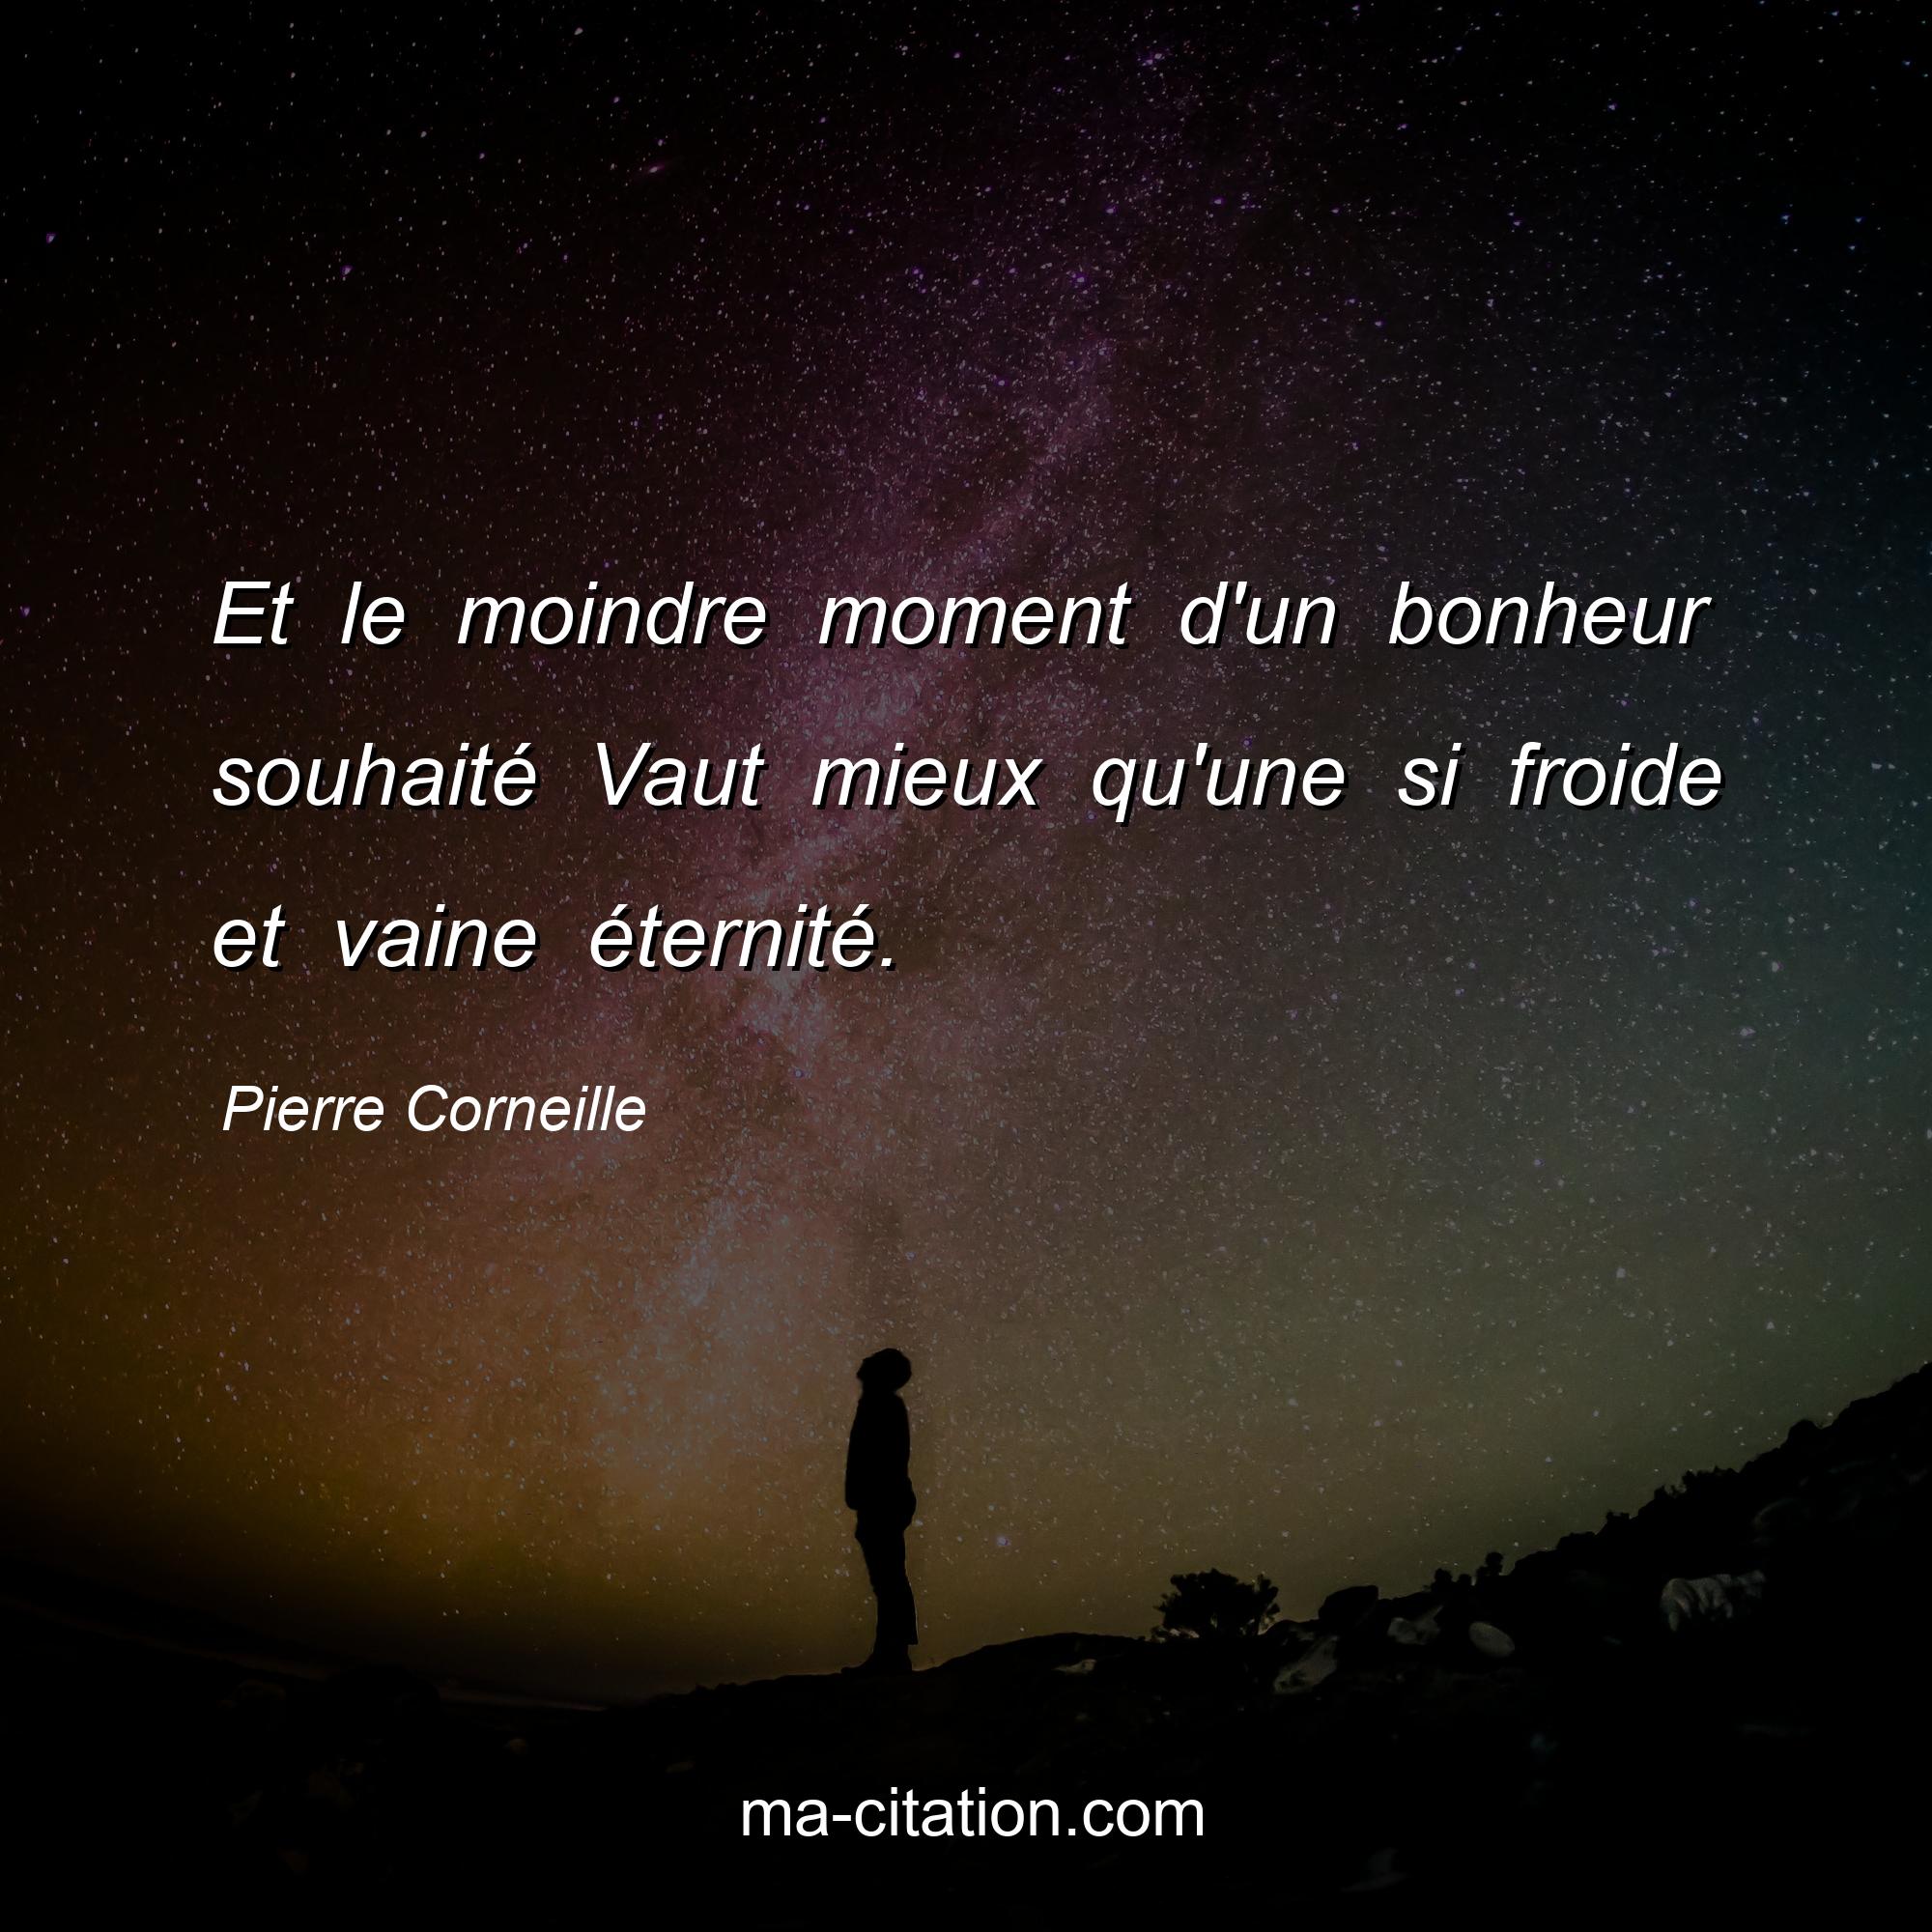 Pierre Corneille : Et le moindre moment d'un bonheur souhaité Vaut mieux qu'une si froide et vaine éternité.